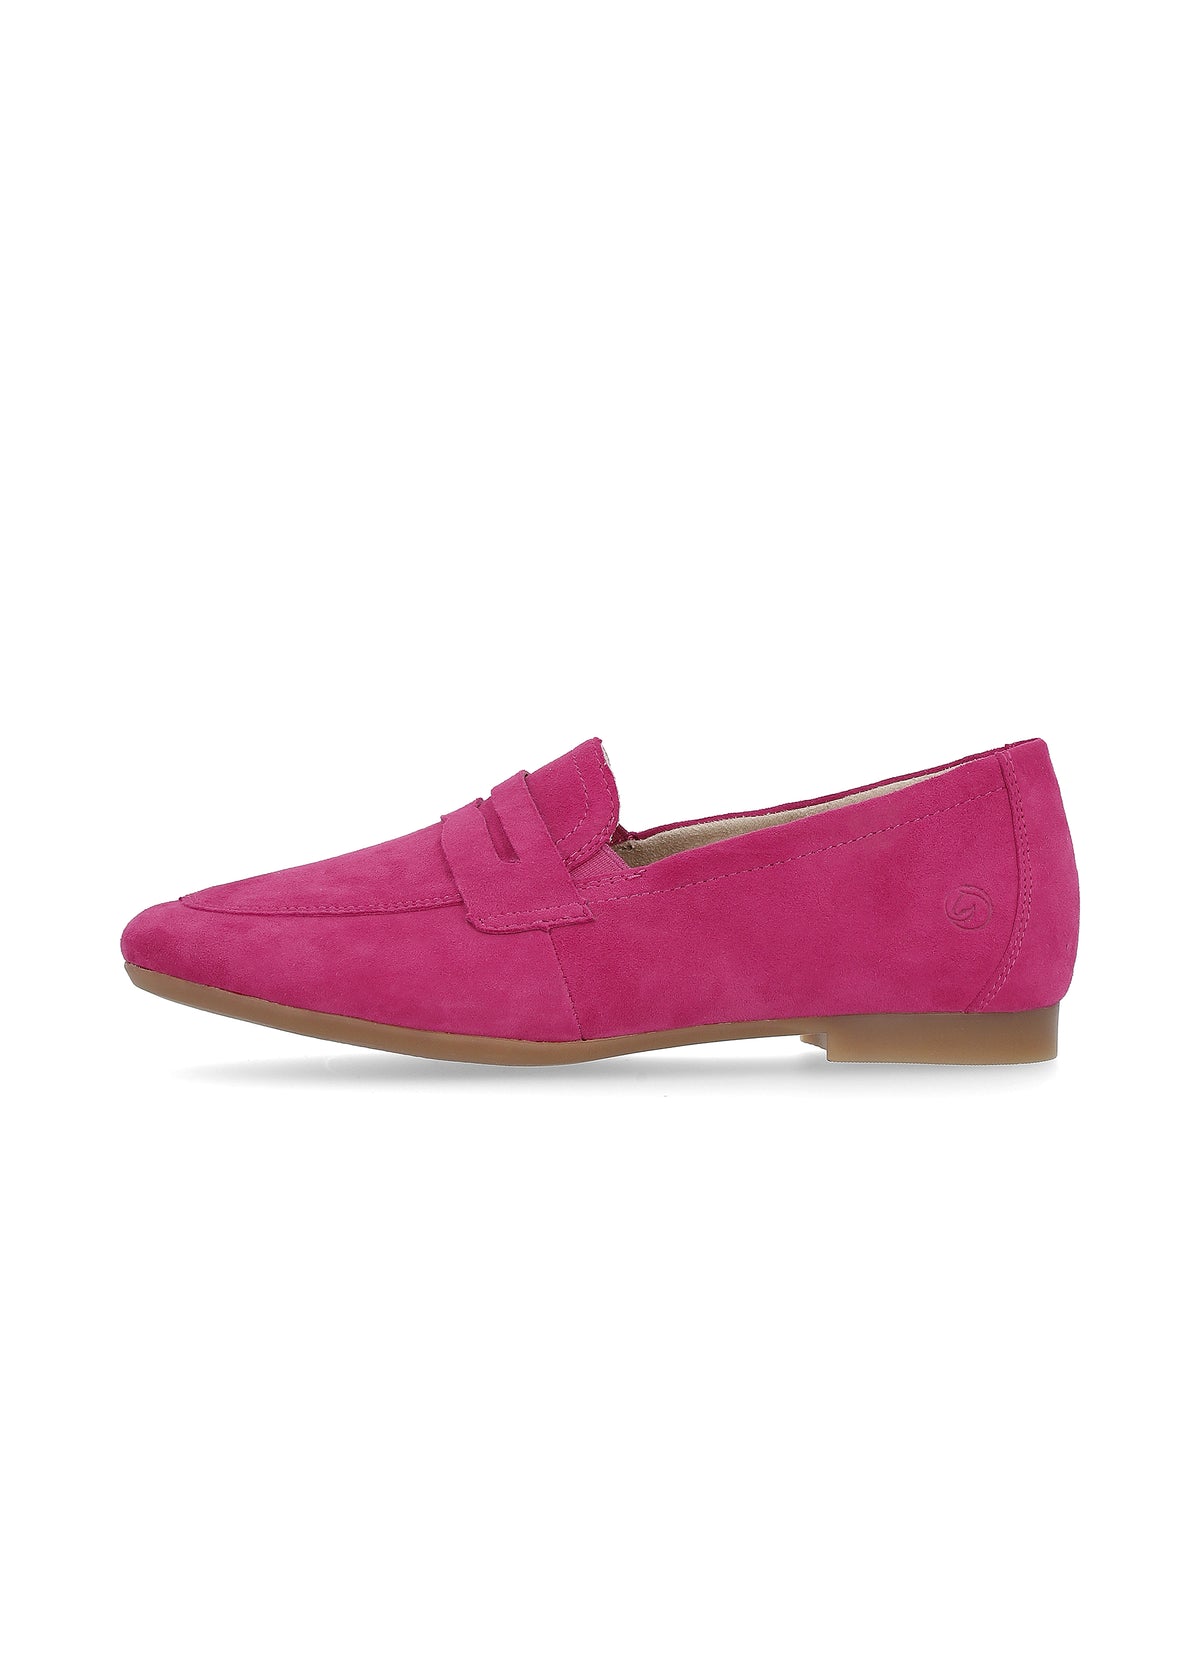 Loaferit - pinkki mokkanahka, loaferpanta koristeena